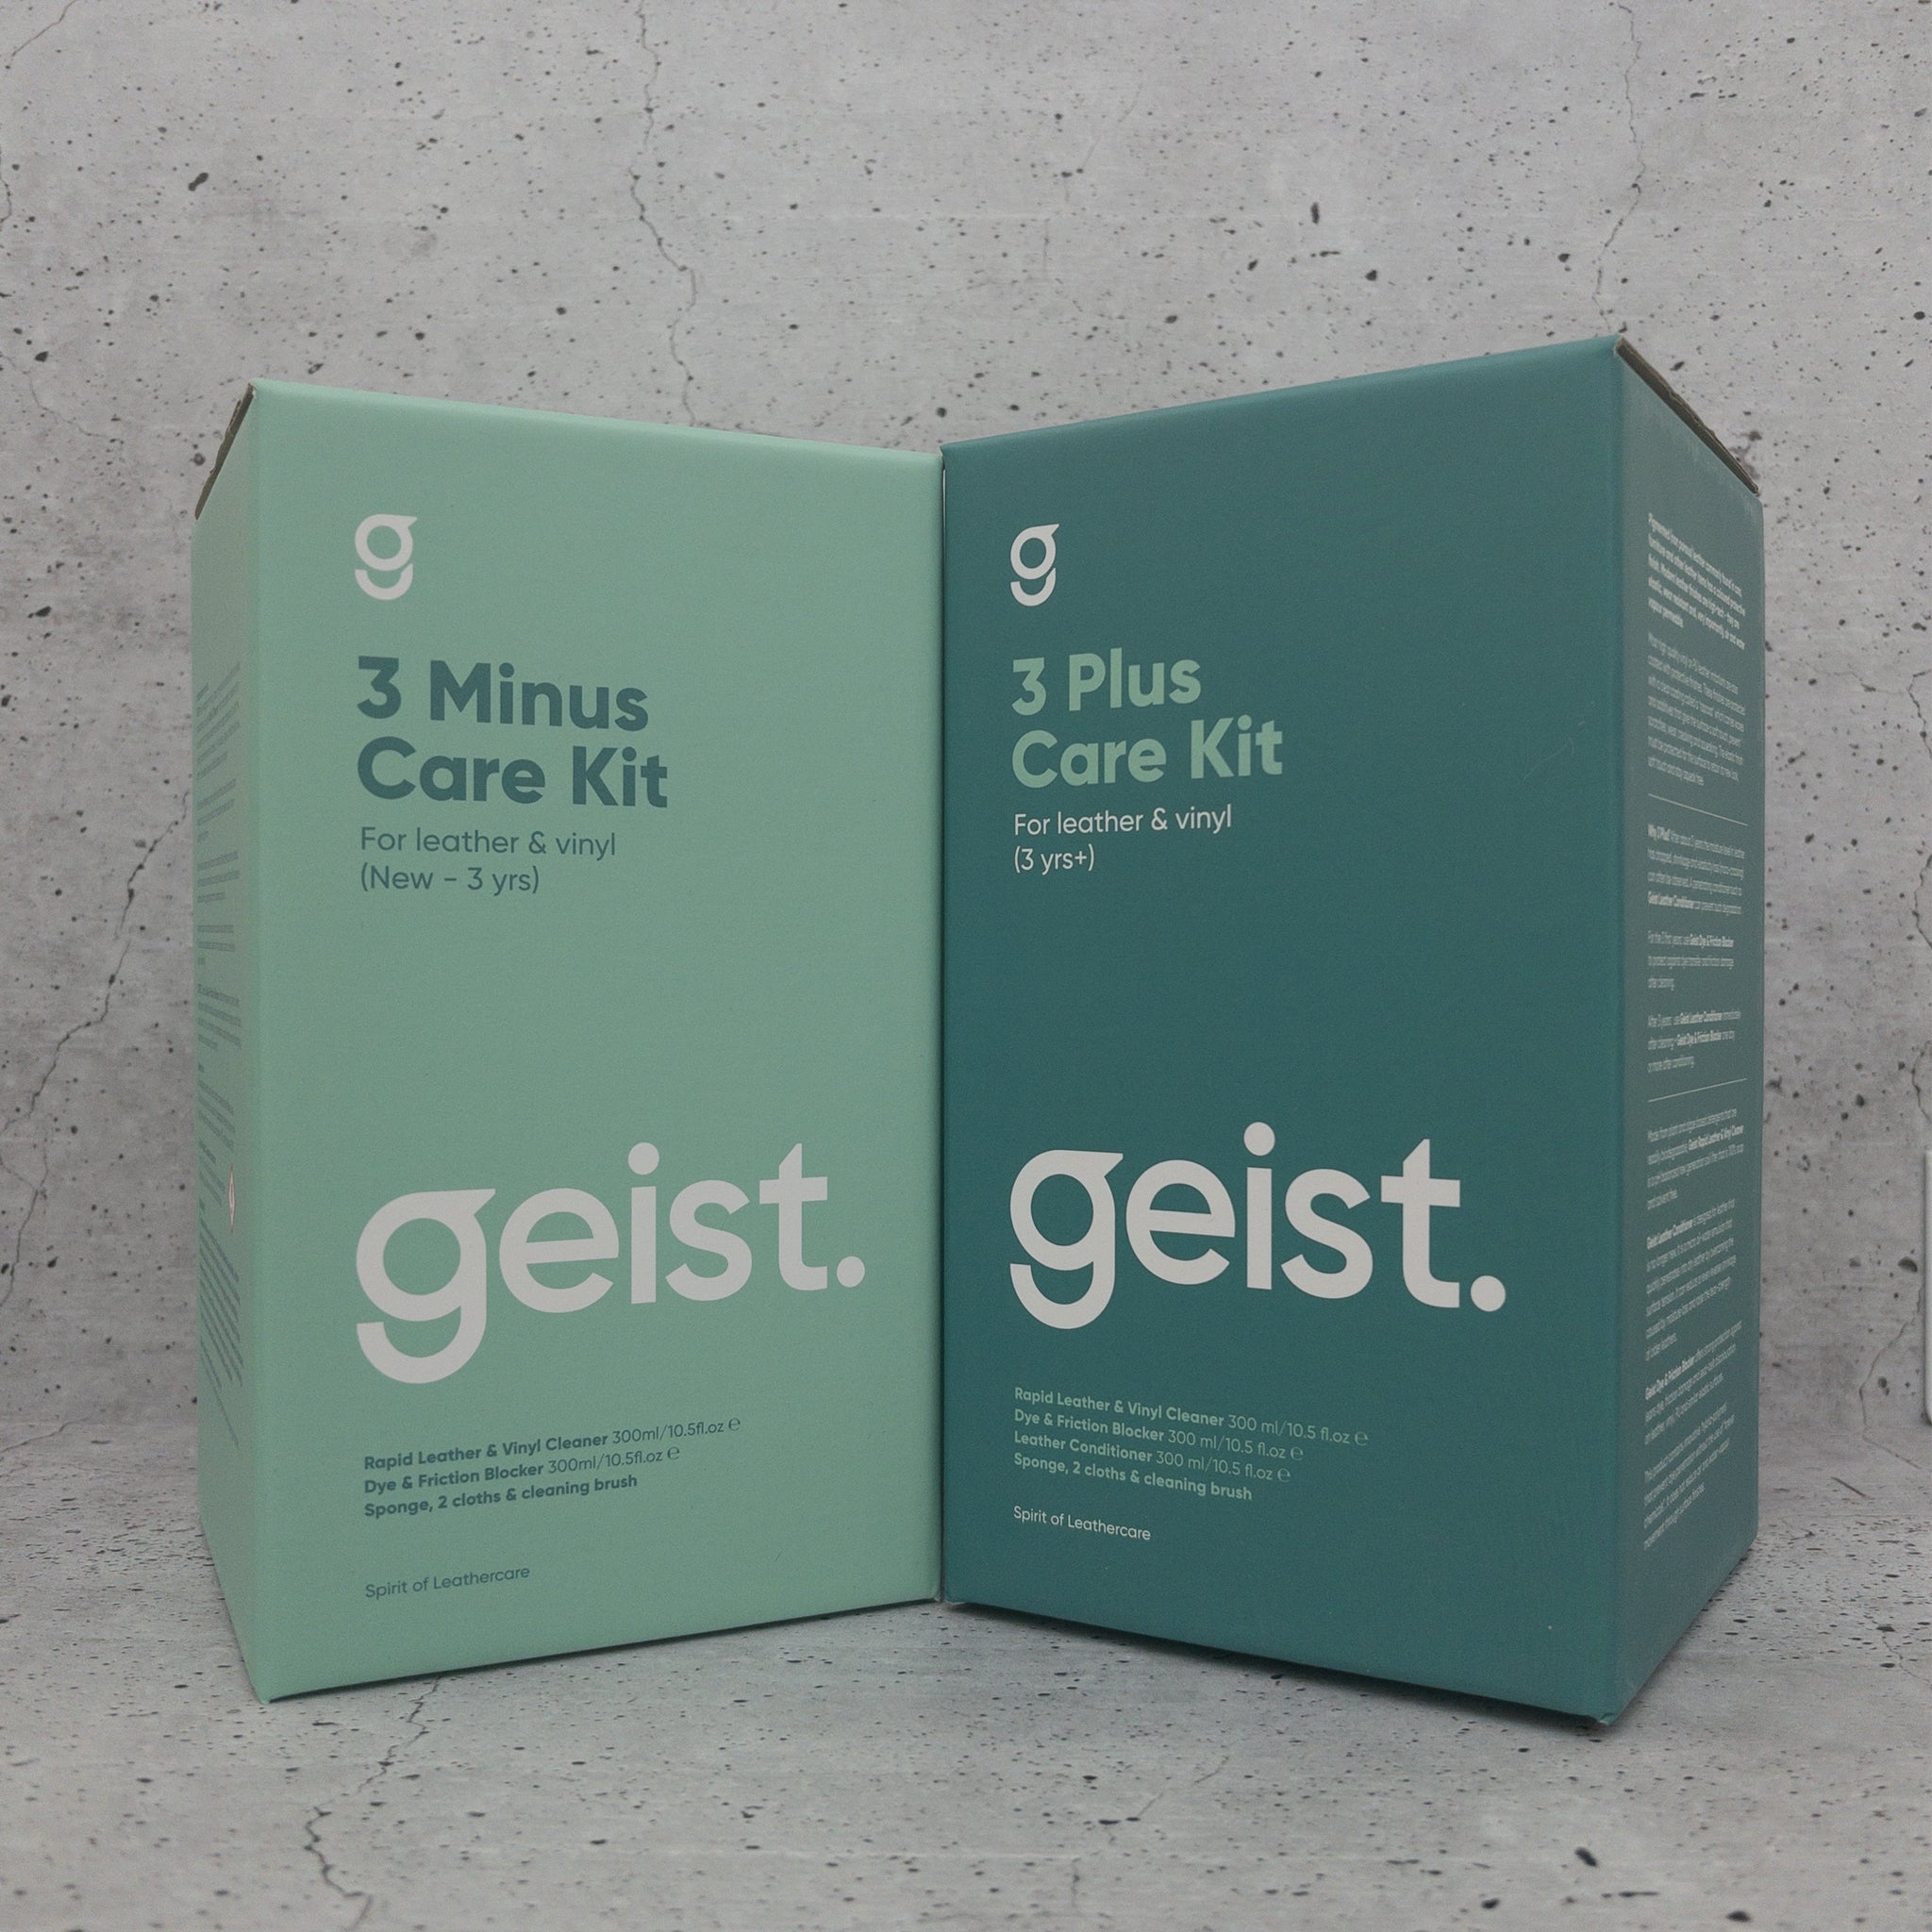 Geist 3 Plus Leather & Vinyl Care Kit